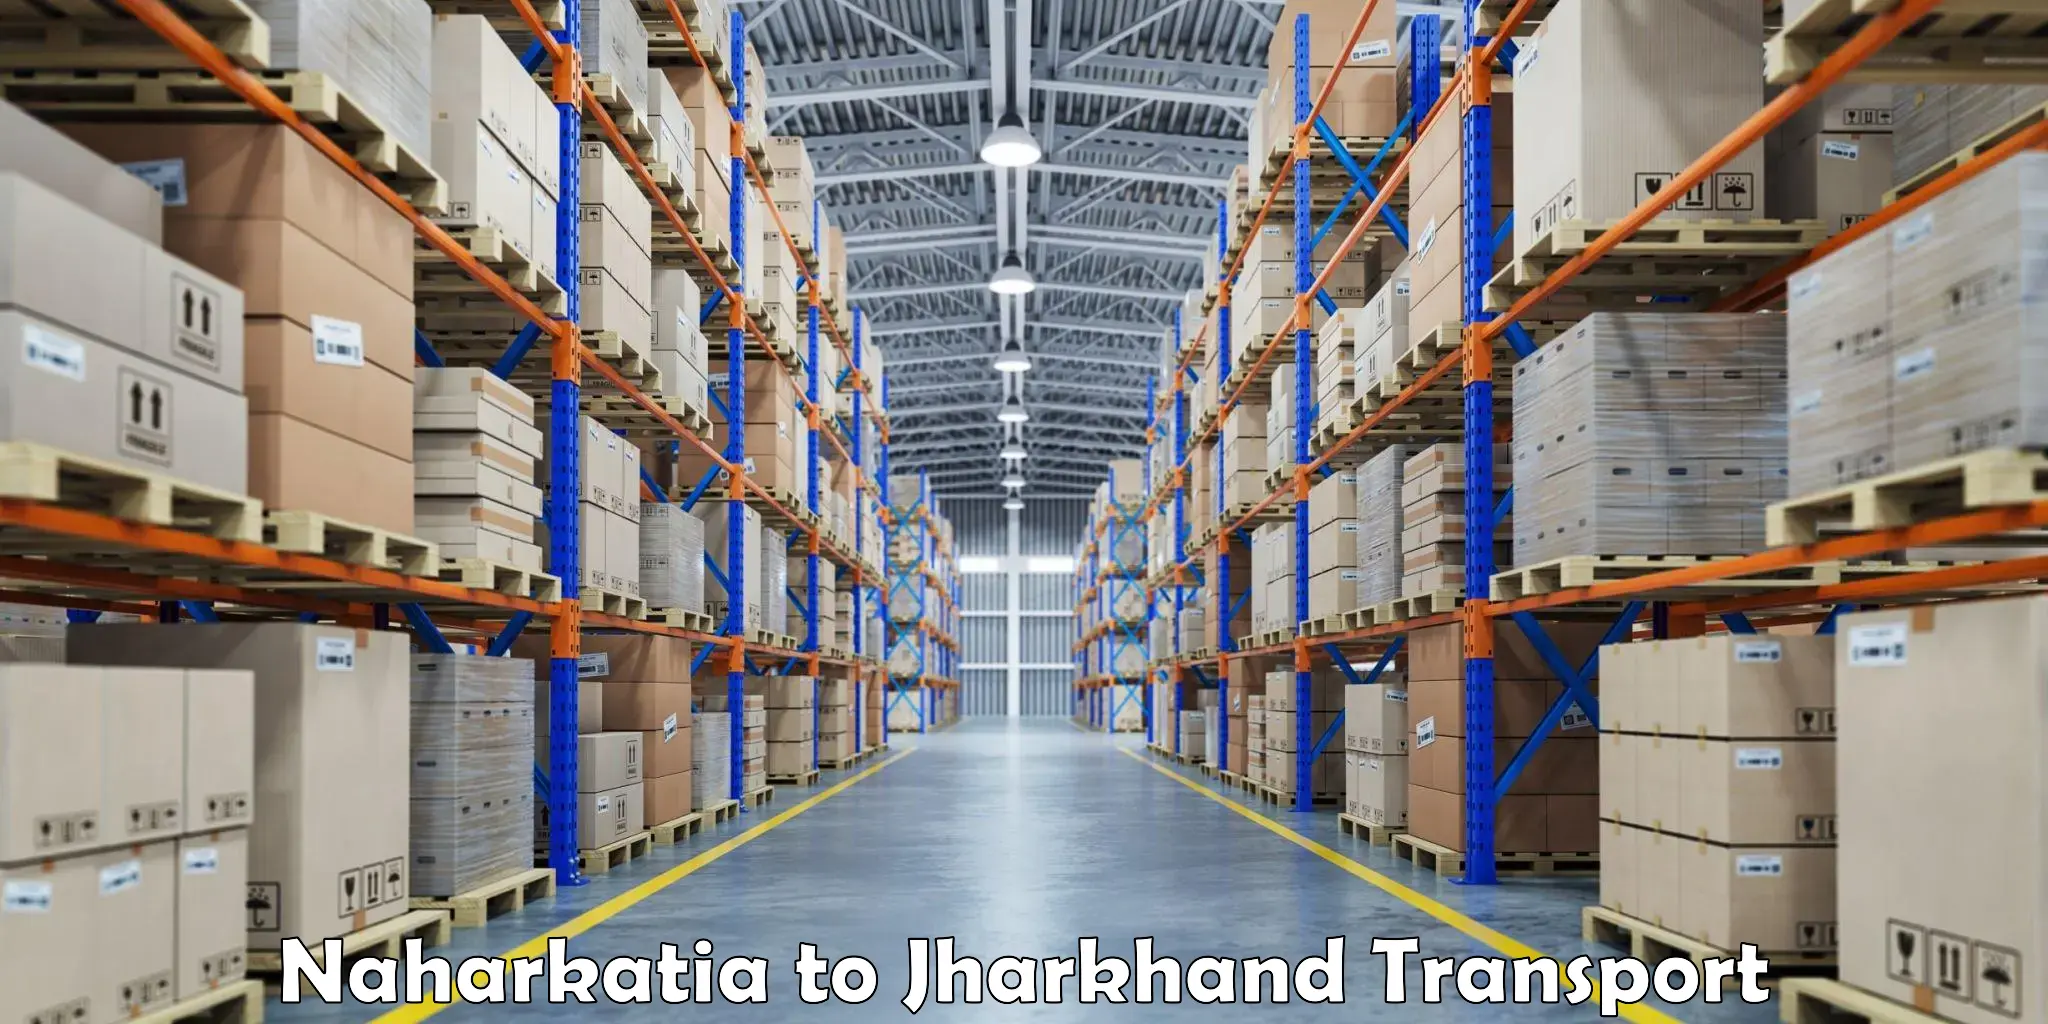 Furniture transport service in Naharkatia to Daltonganj